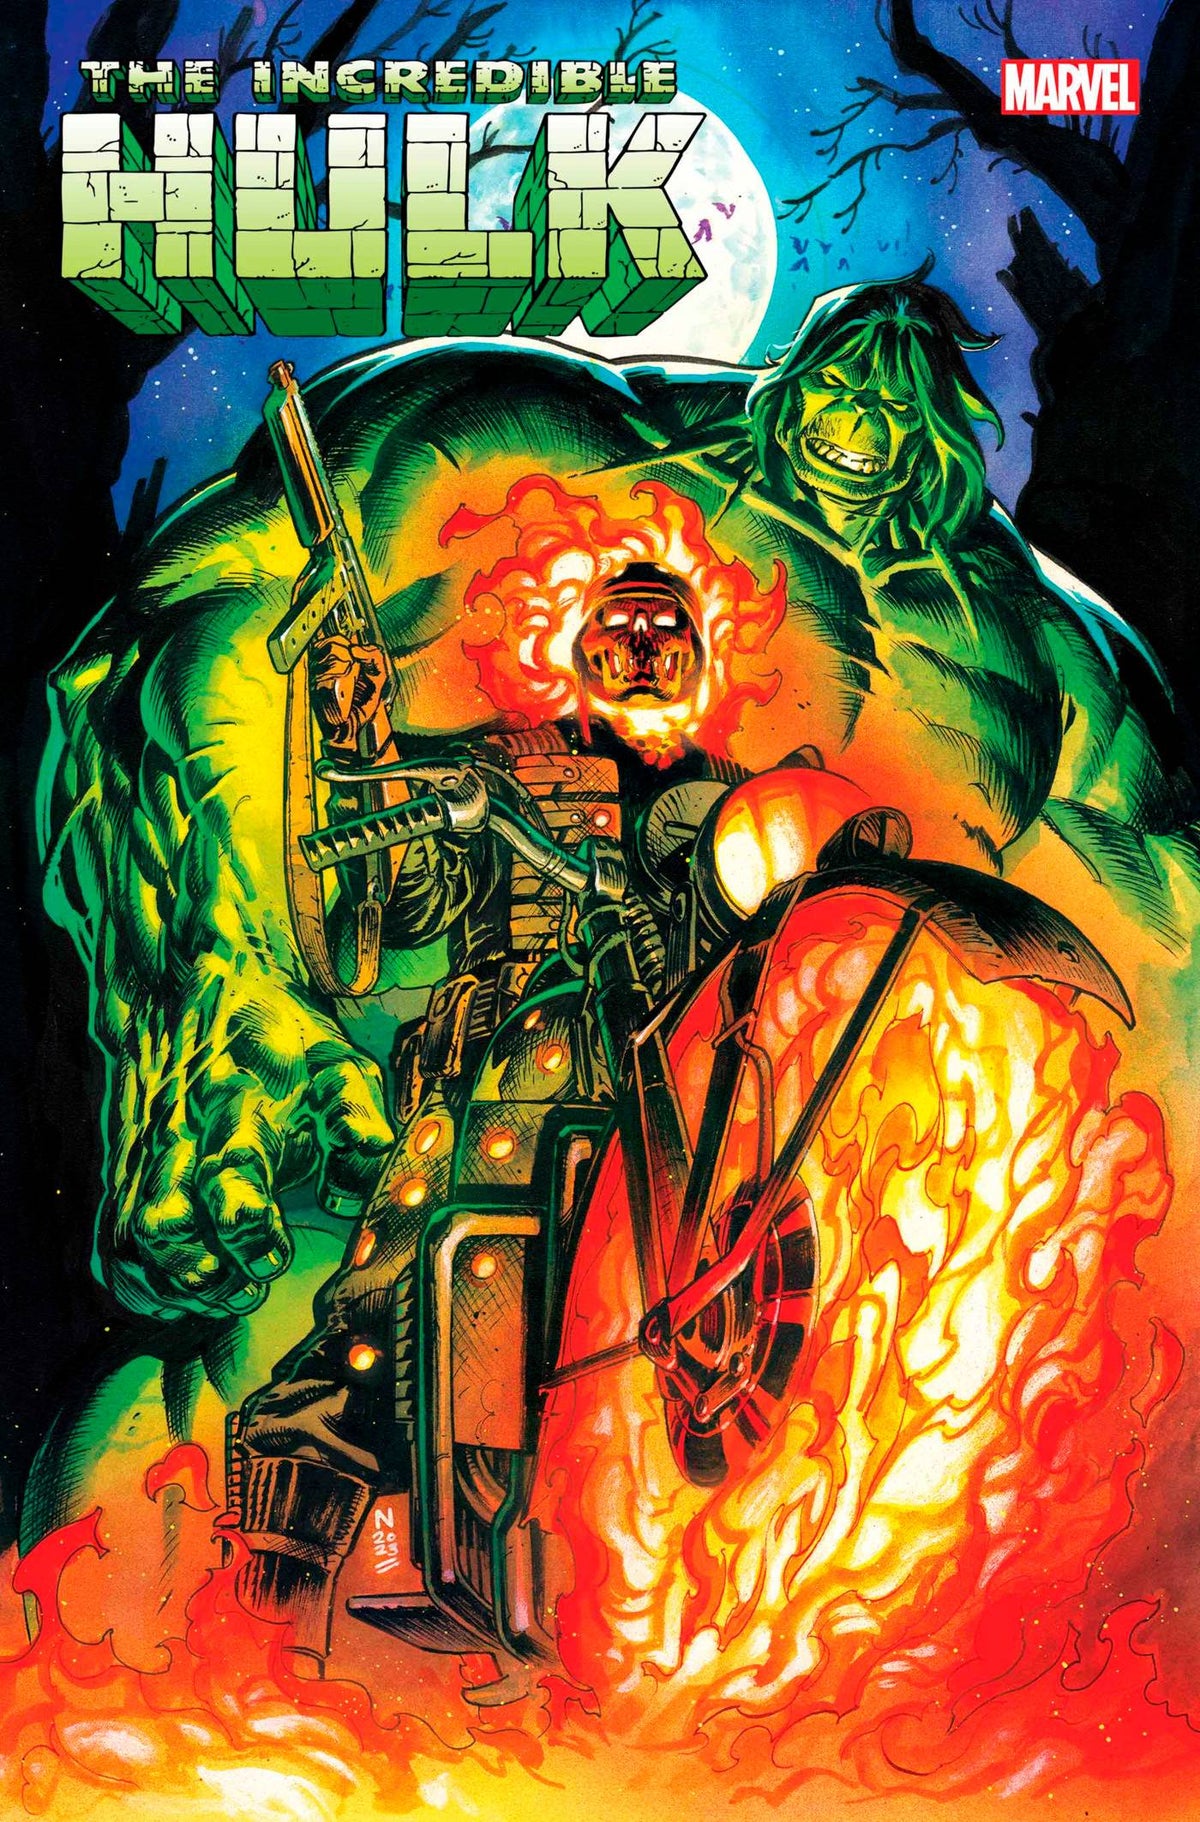 Incredible Hulk #8 - State of Comics